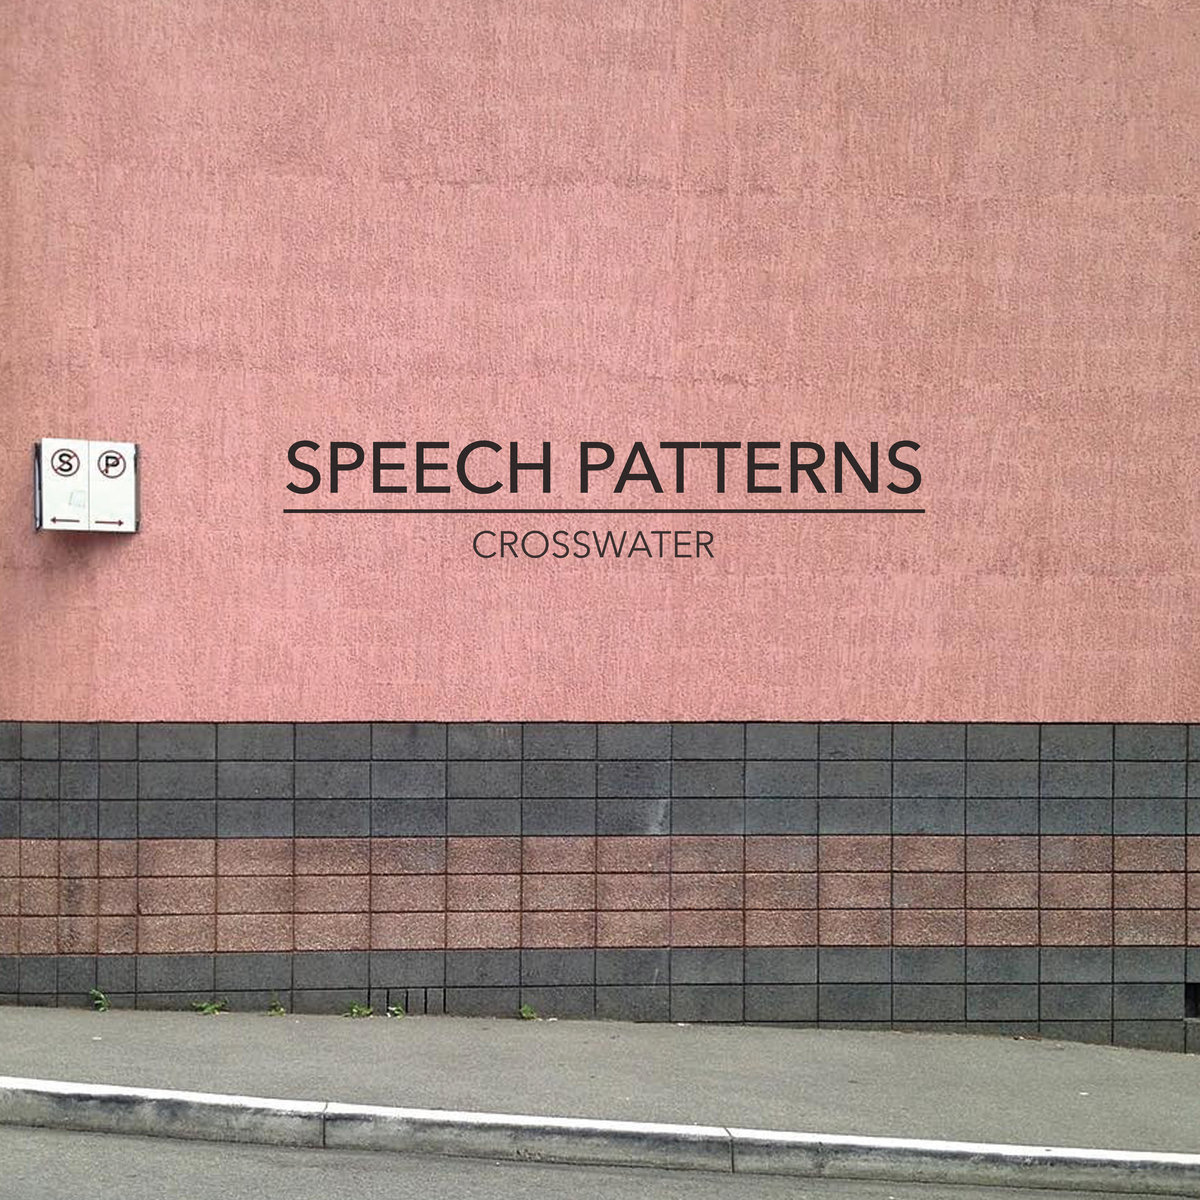 Speech patterns. Fast Speech patterns.